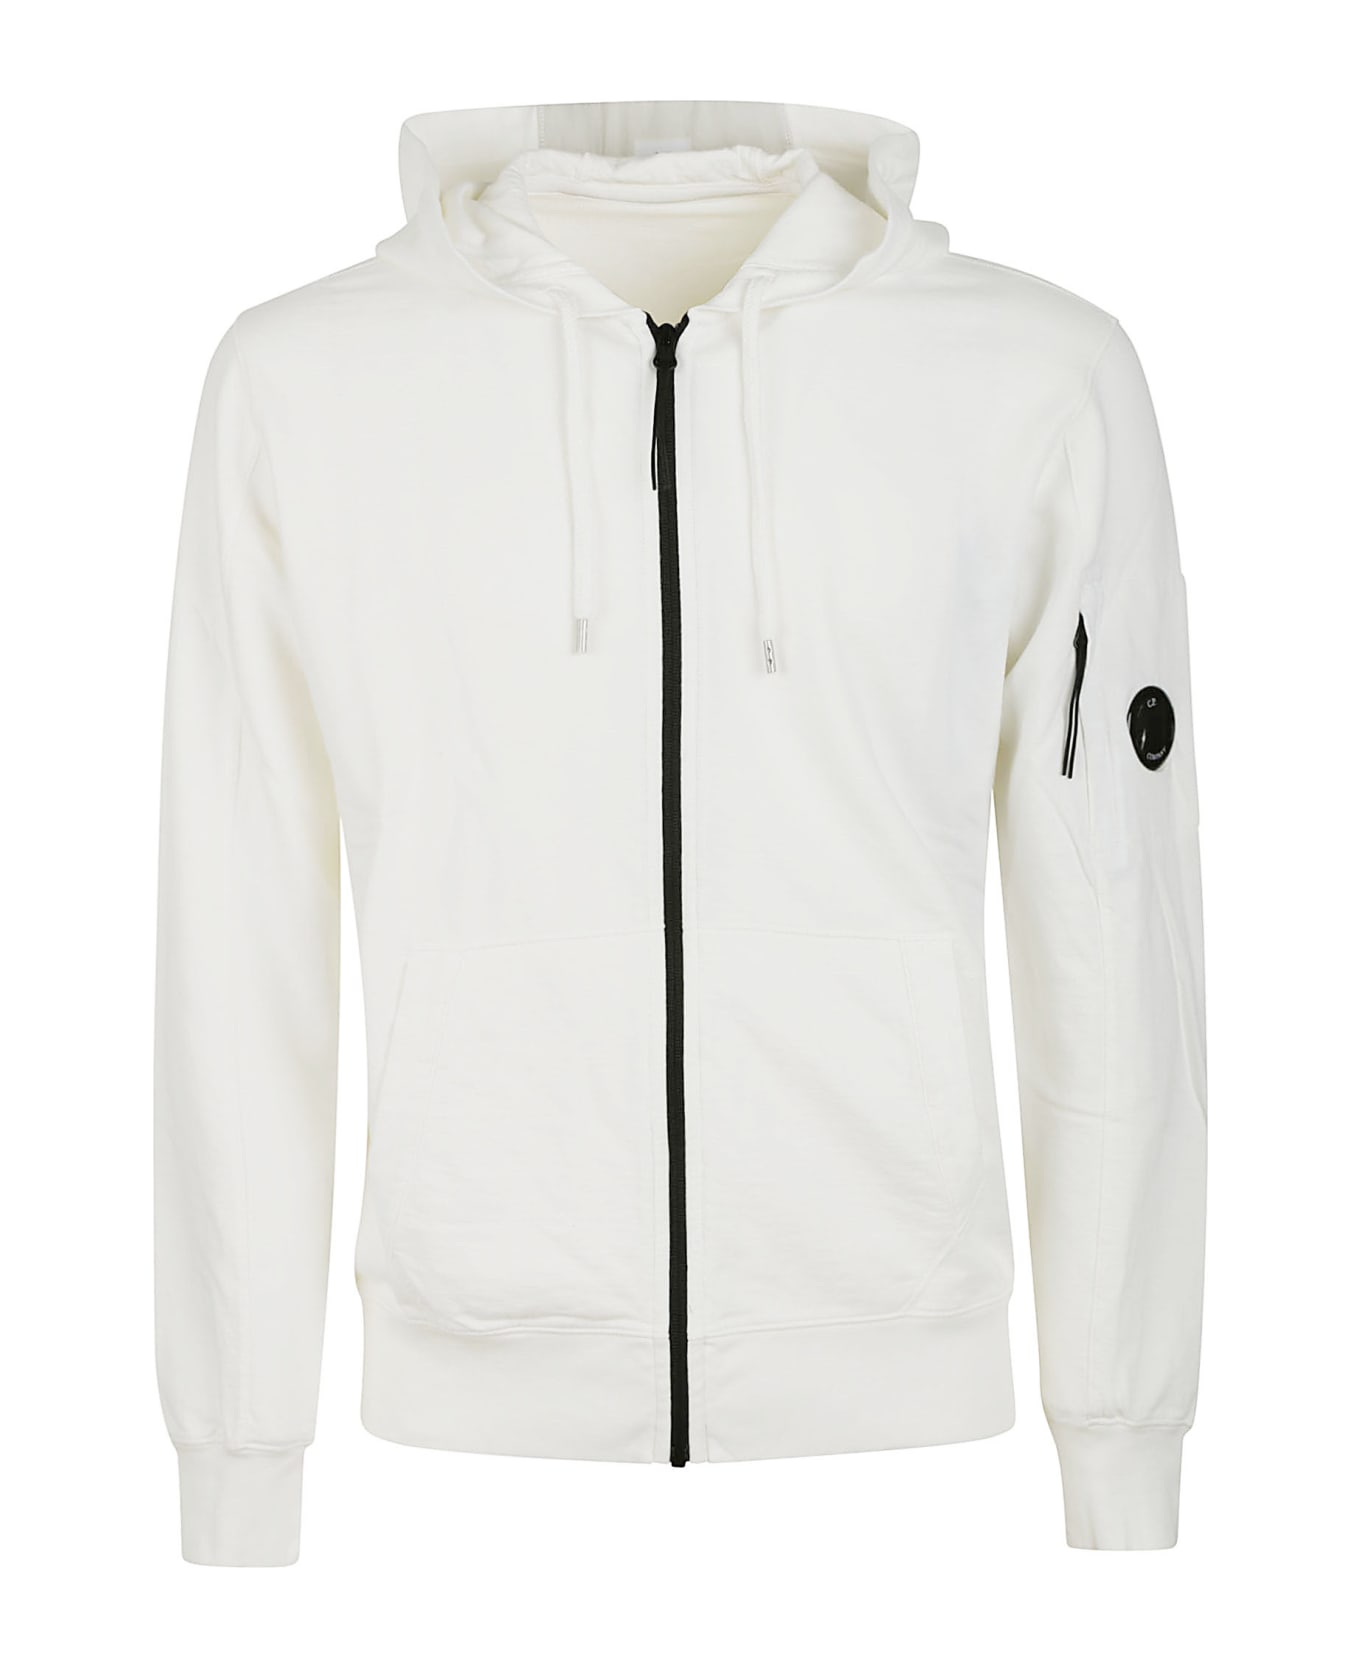 C.P. Company Light Fleece Open Hooded Sweatshirt - Bianco